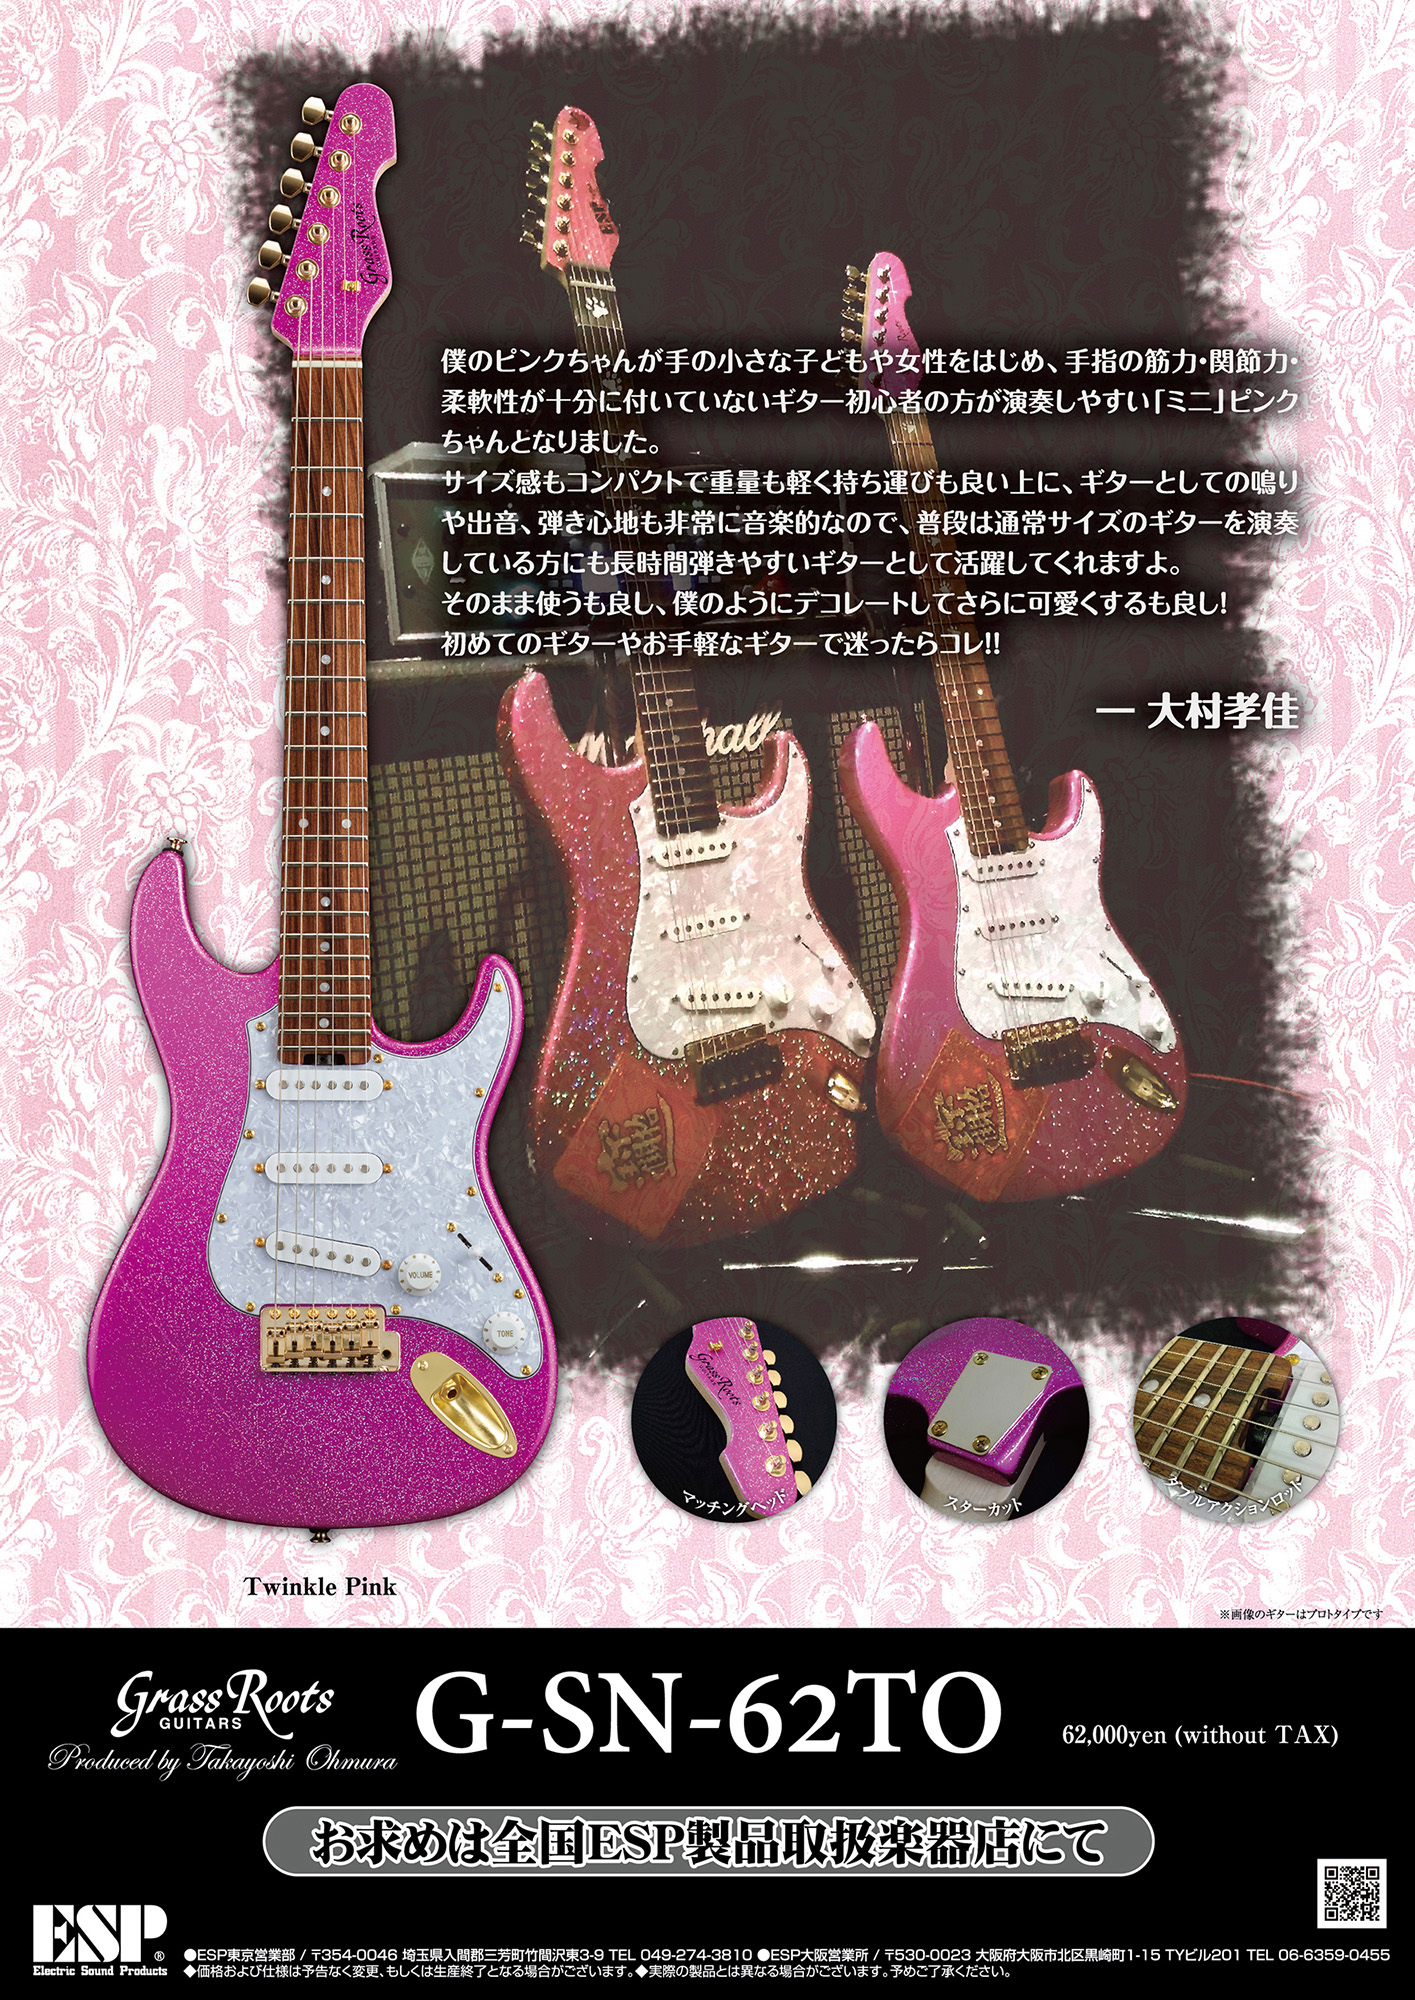 Grass Roots】大村孝佳プロデュースのミニギター「G-SN-62TO」が登場 